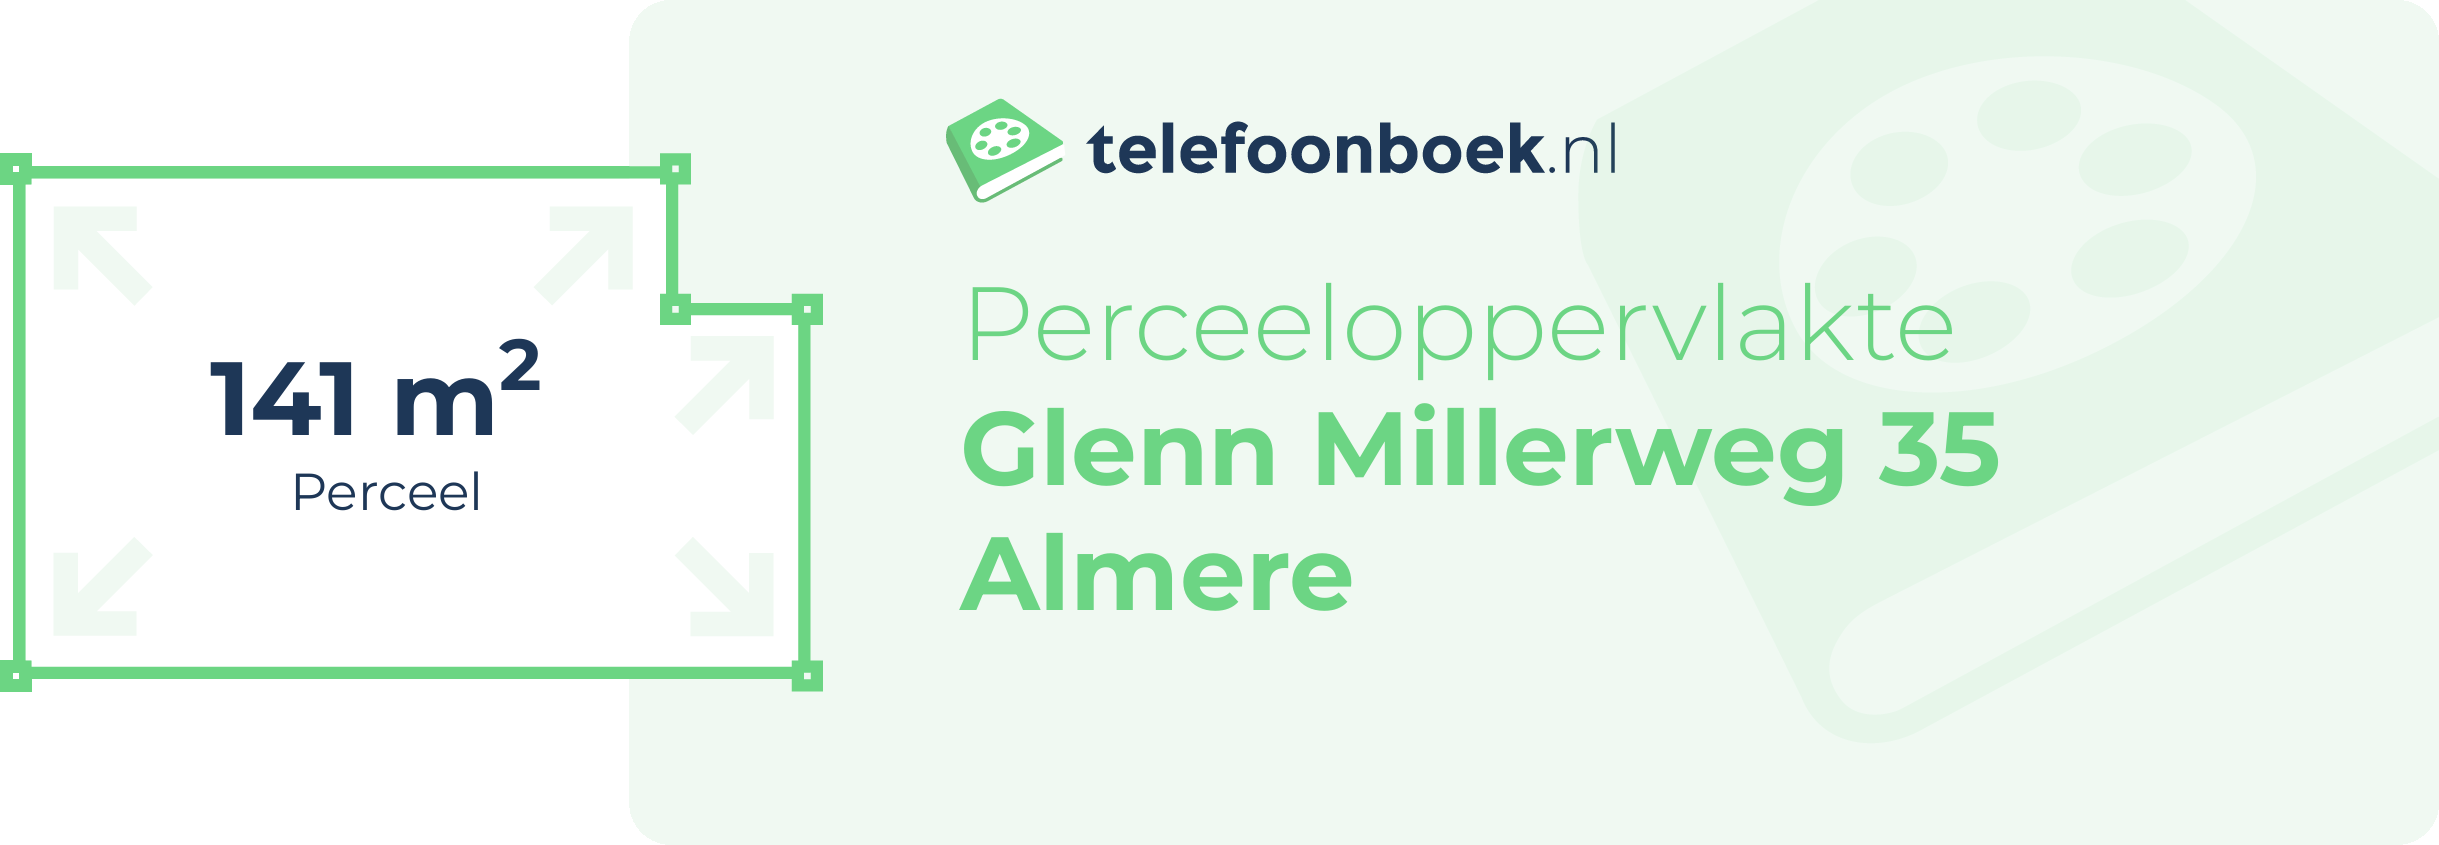 Perceeloppervlakte Glenn Millerweg 35 Almere